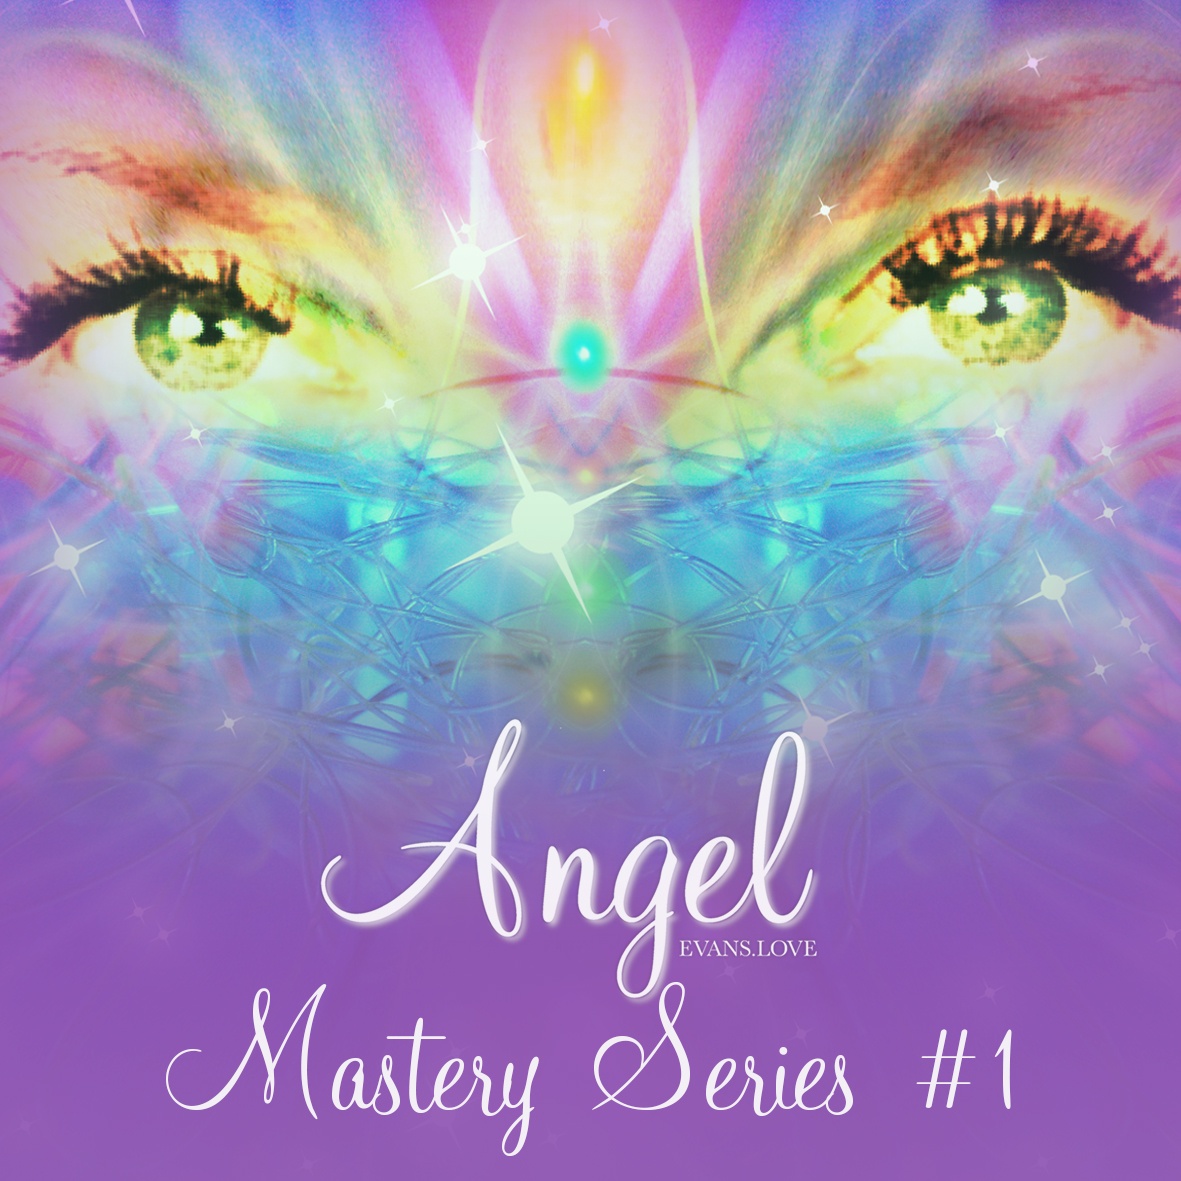 Angel Evans' Mastery Series #1 - Angel Evans